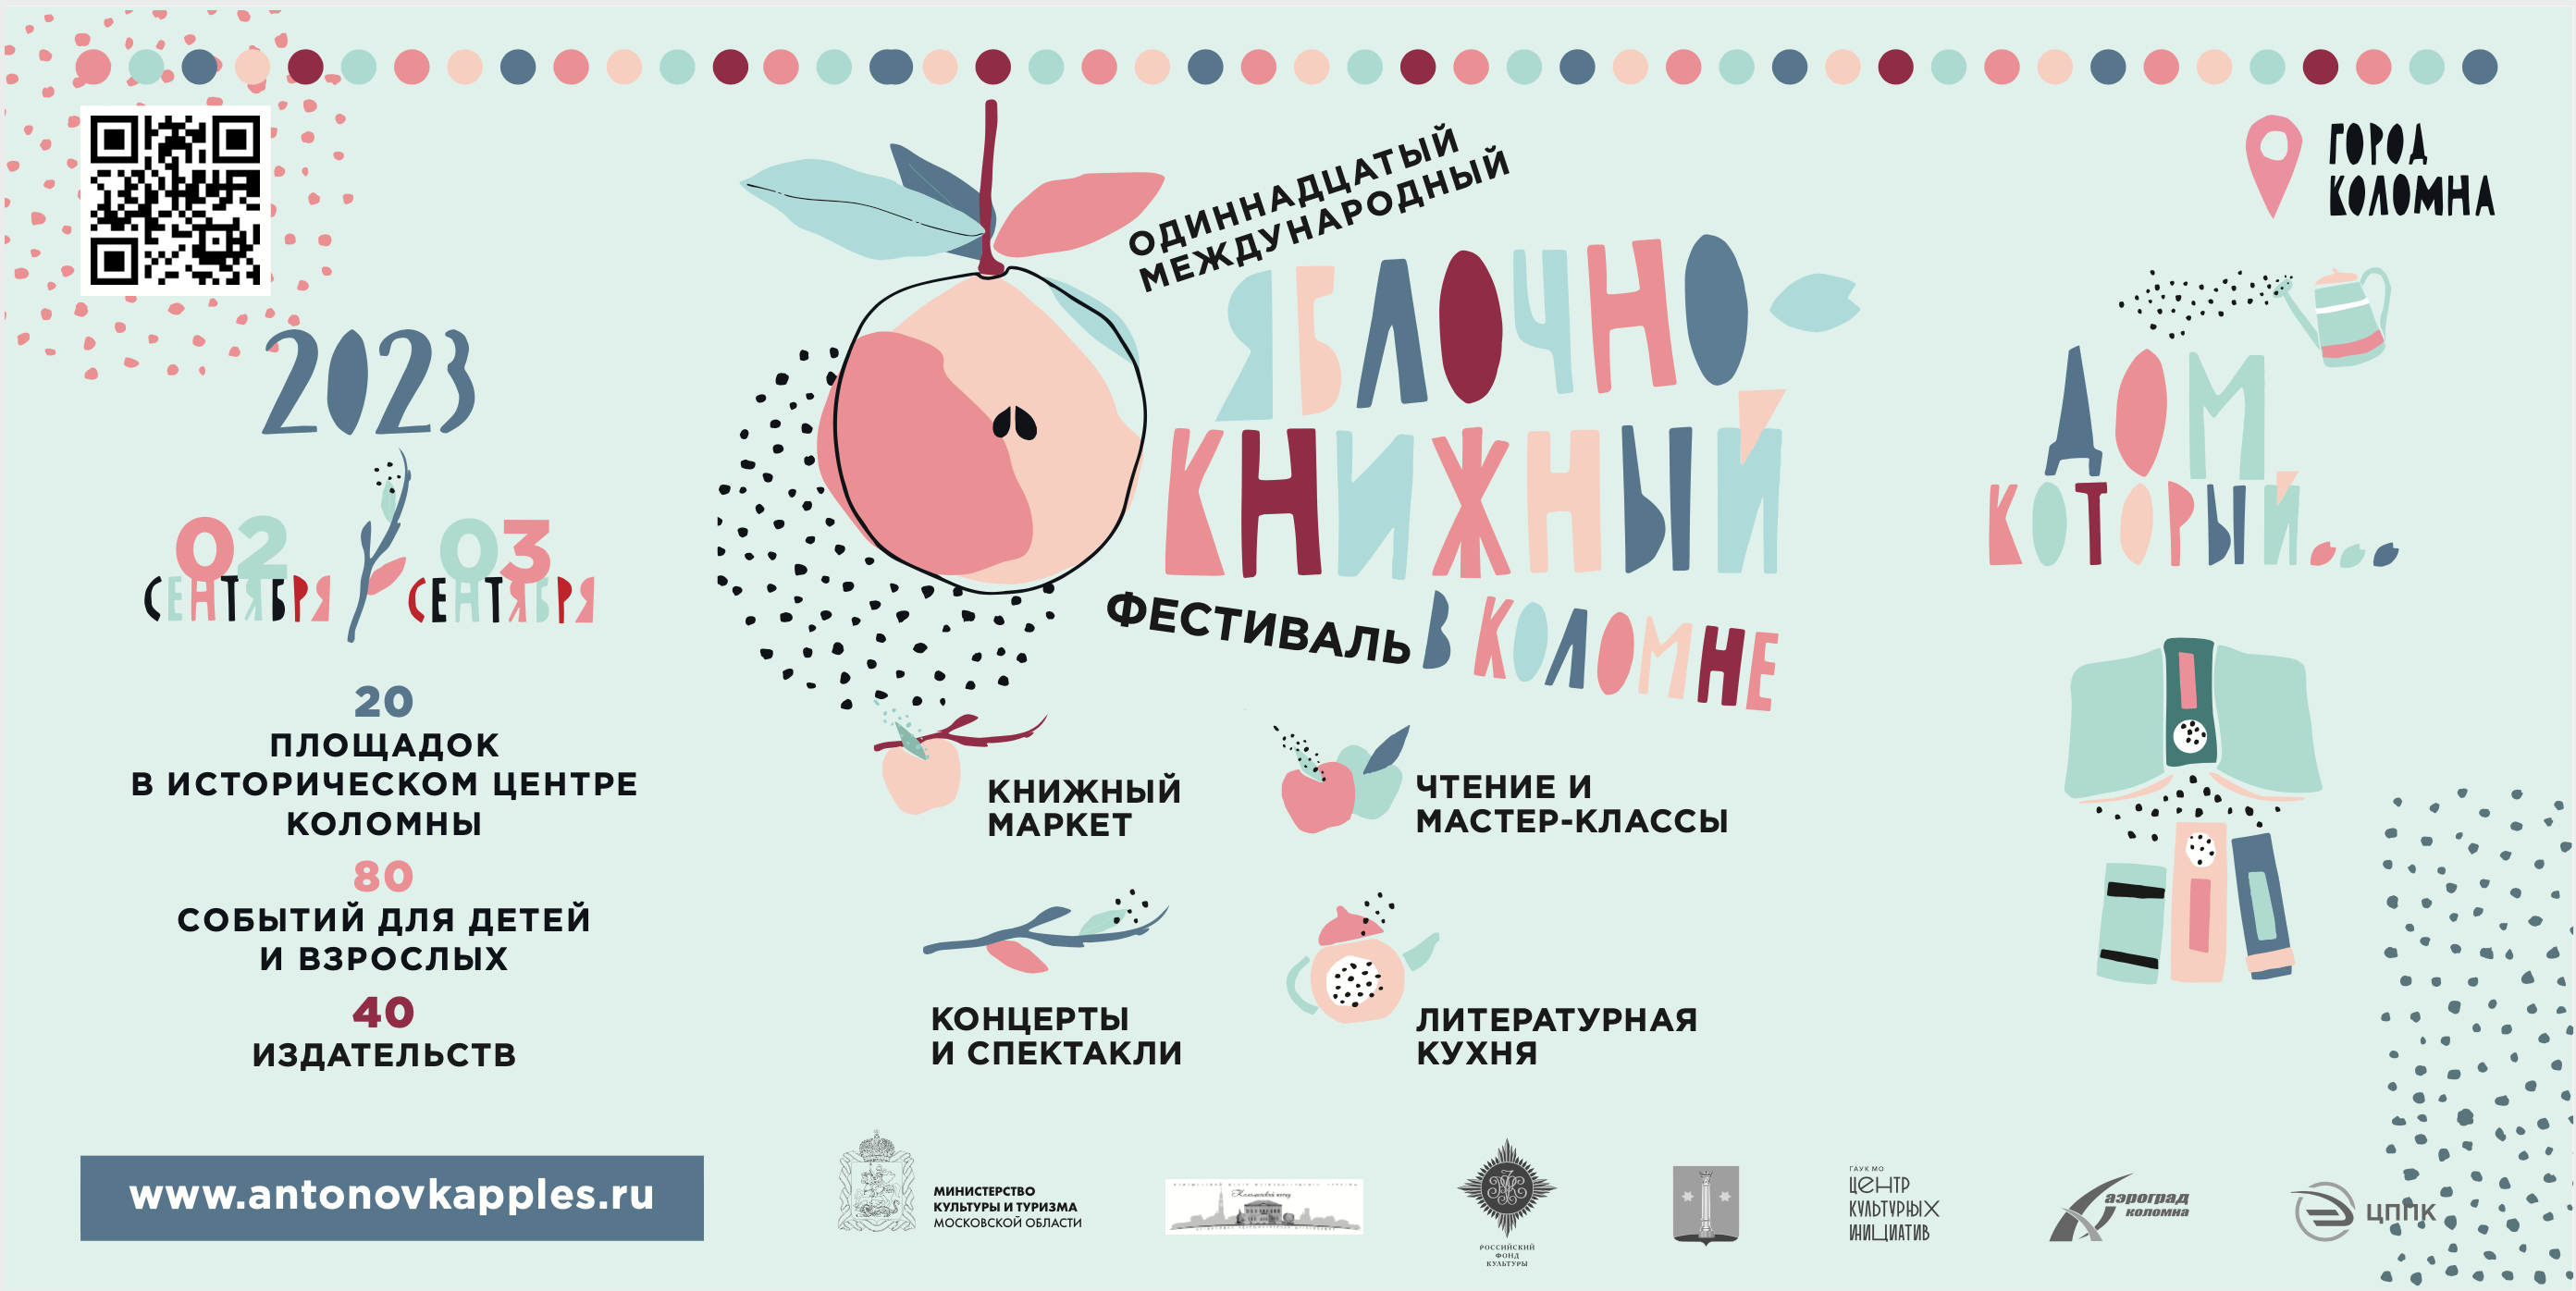 Яблочно-книжный фестиваль пройдет в Коломне 2 и 3 сентября